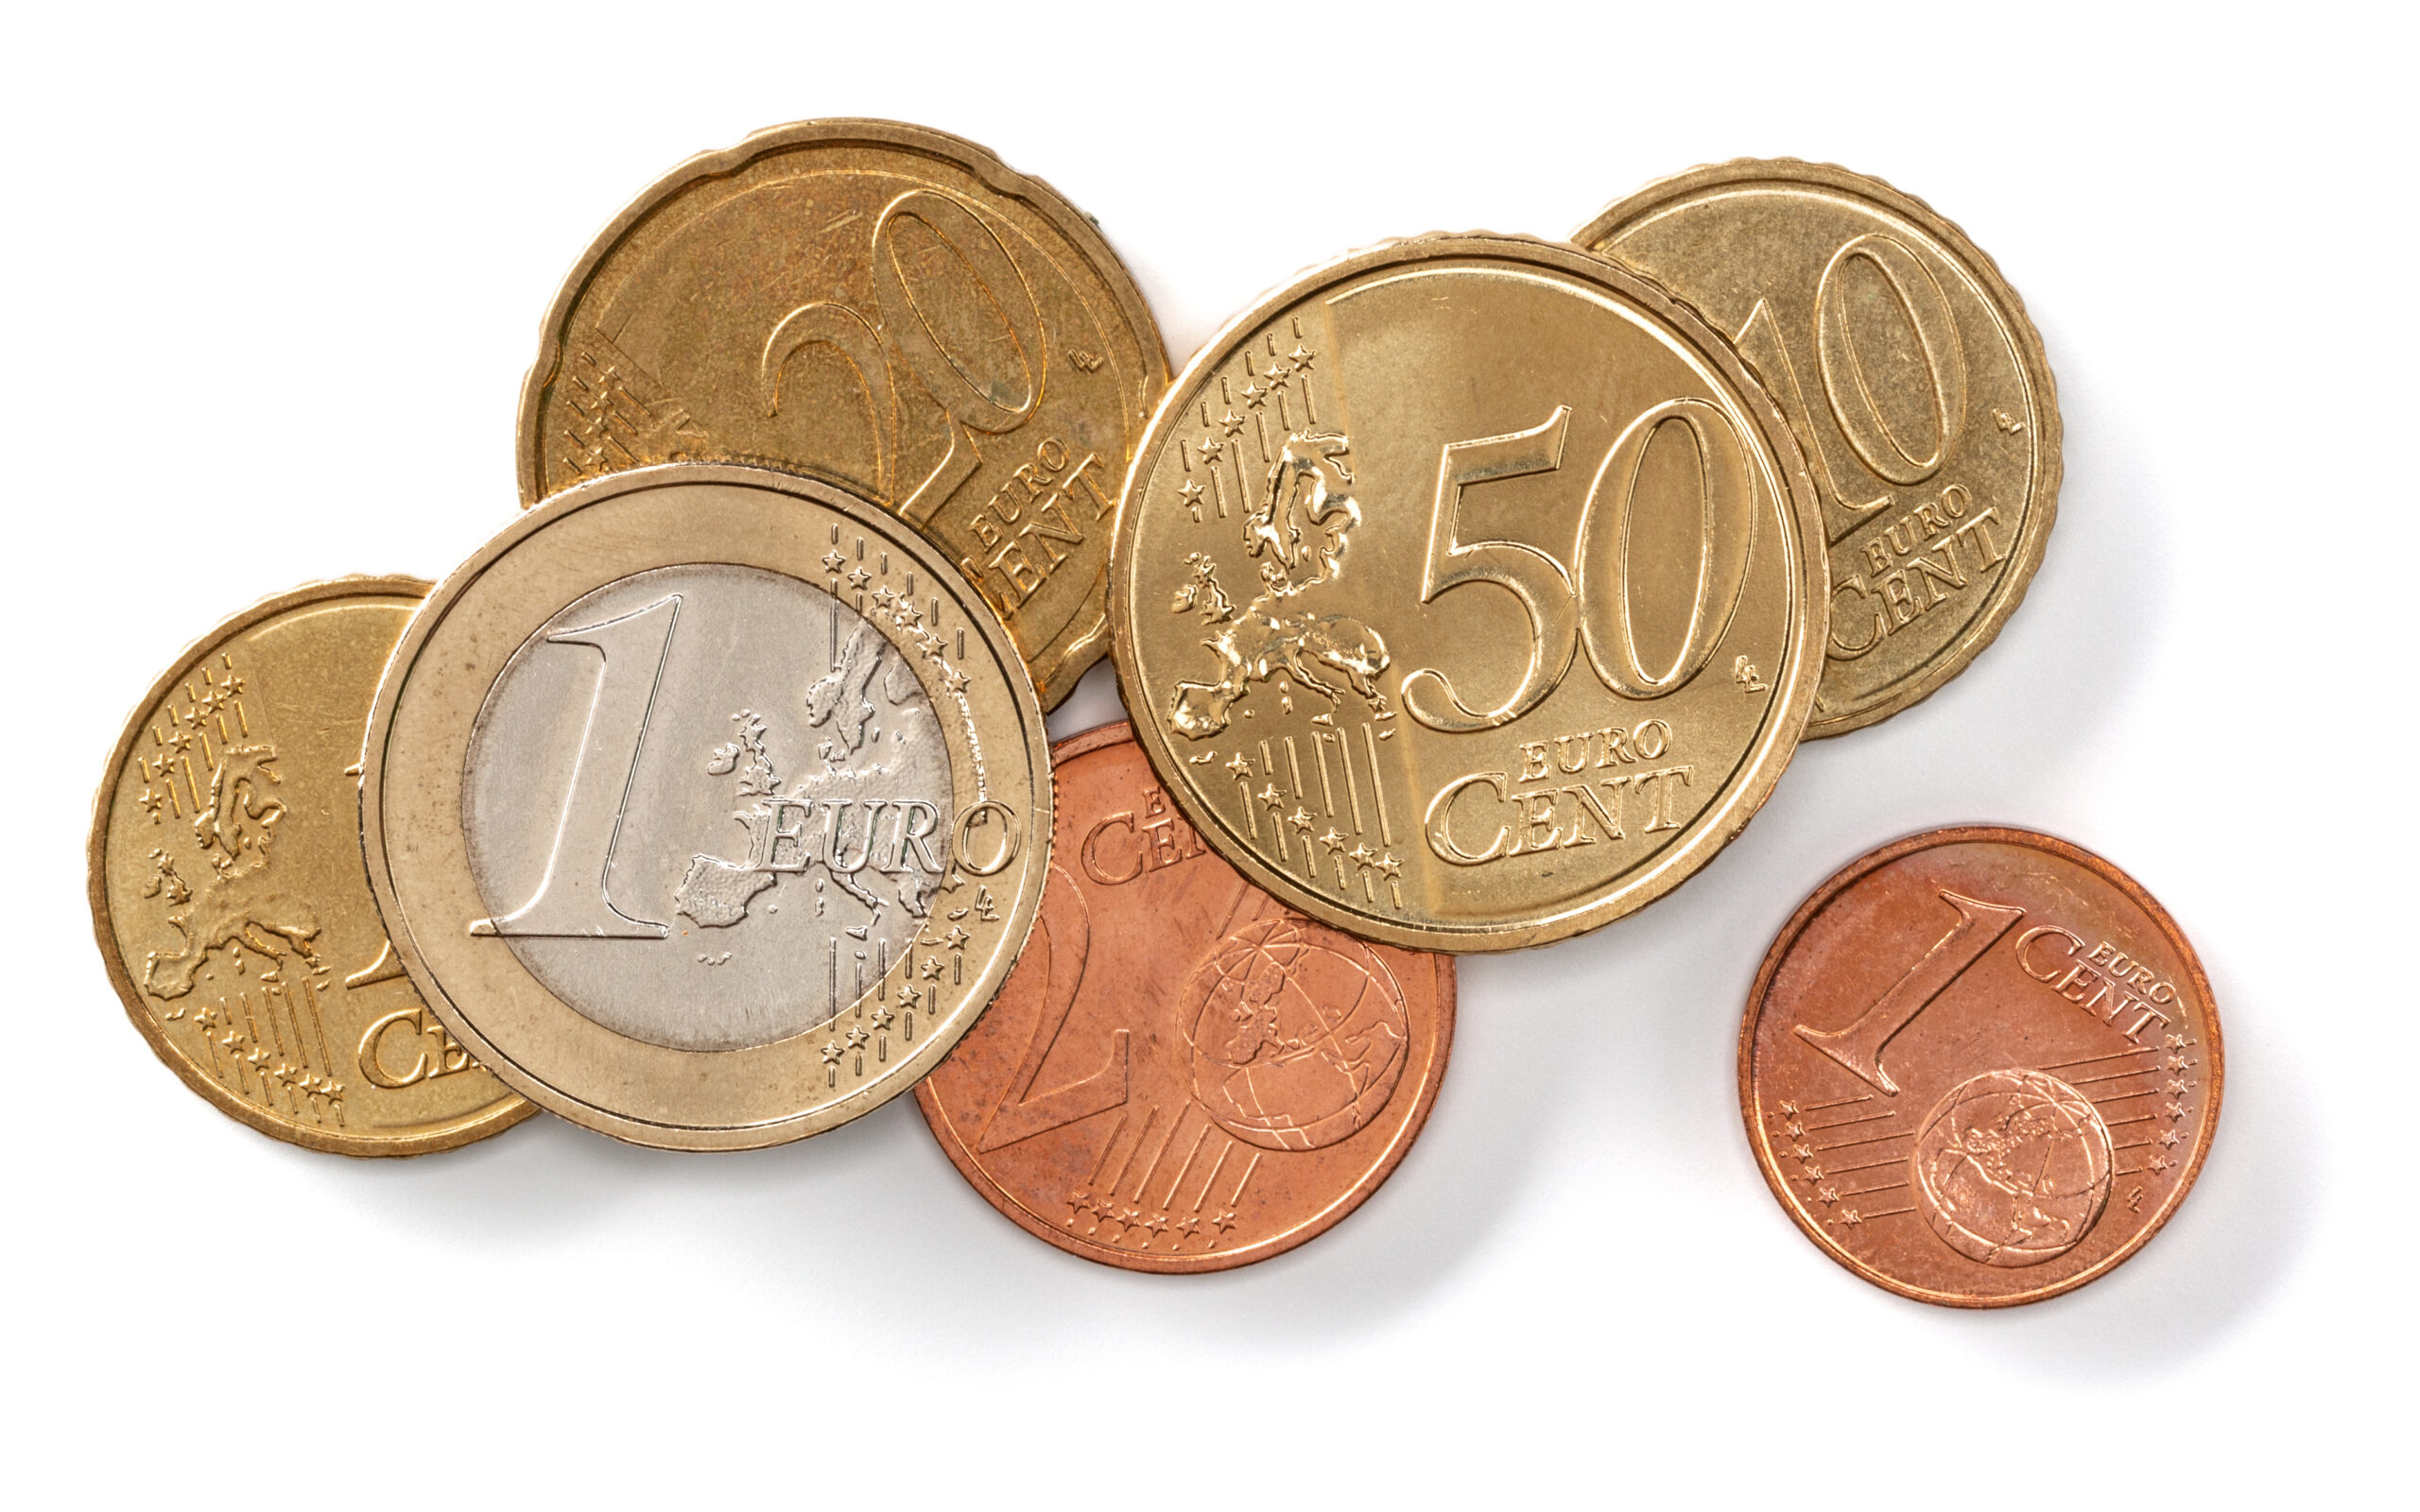 Questa moneta comune con errore di conio è valutata circa 40.000 euro. Controlla le tue